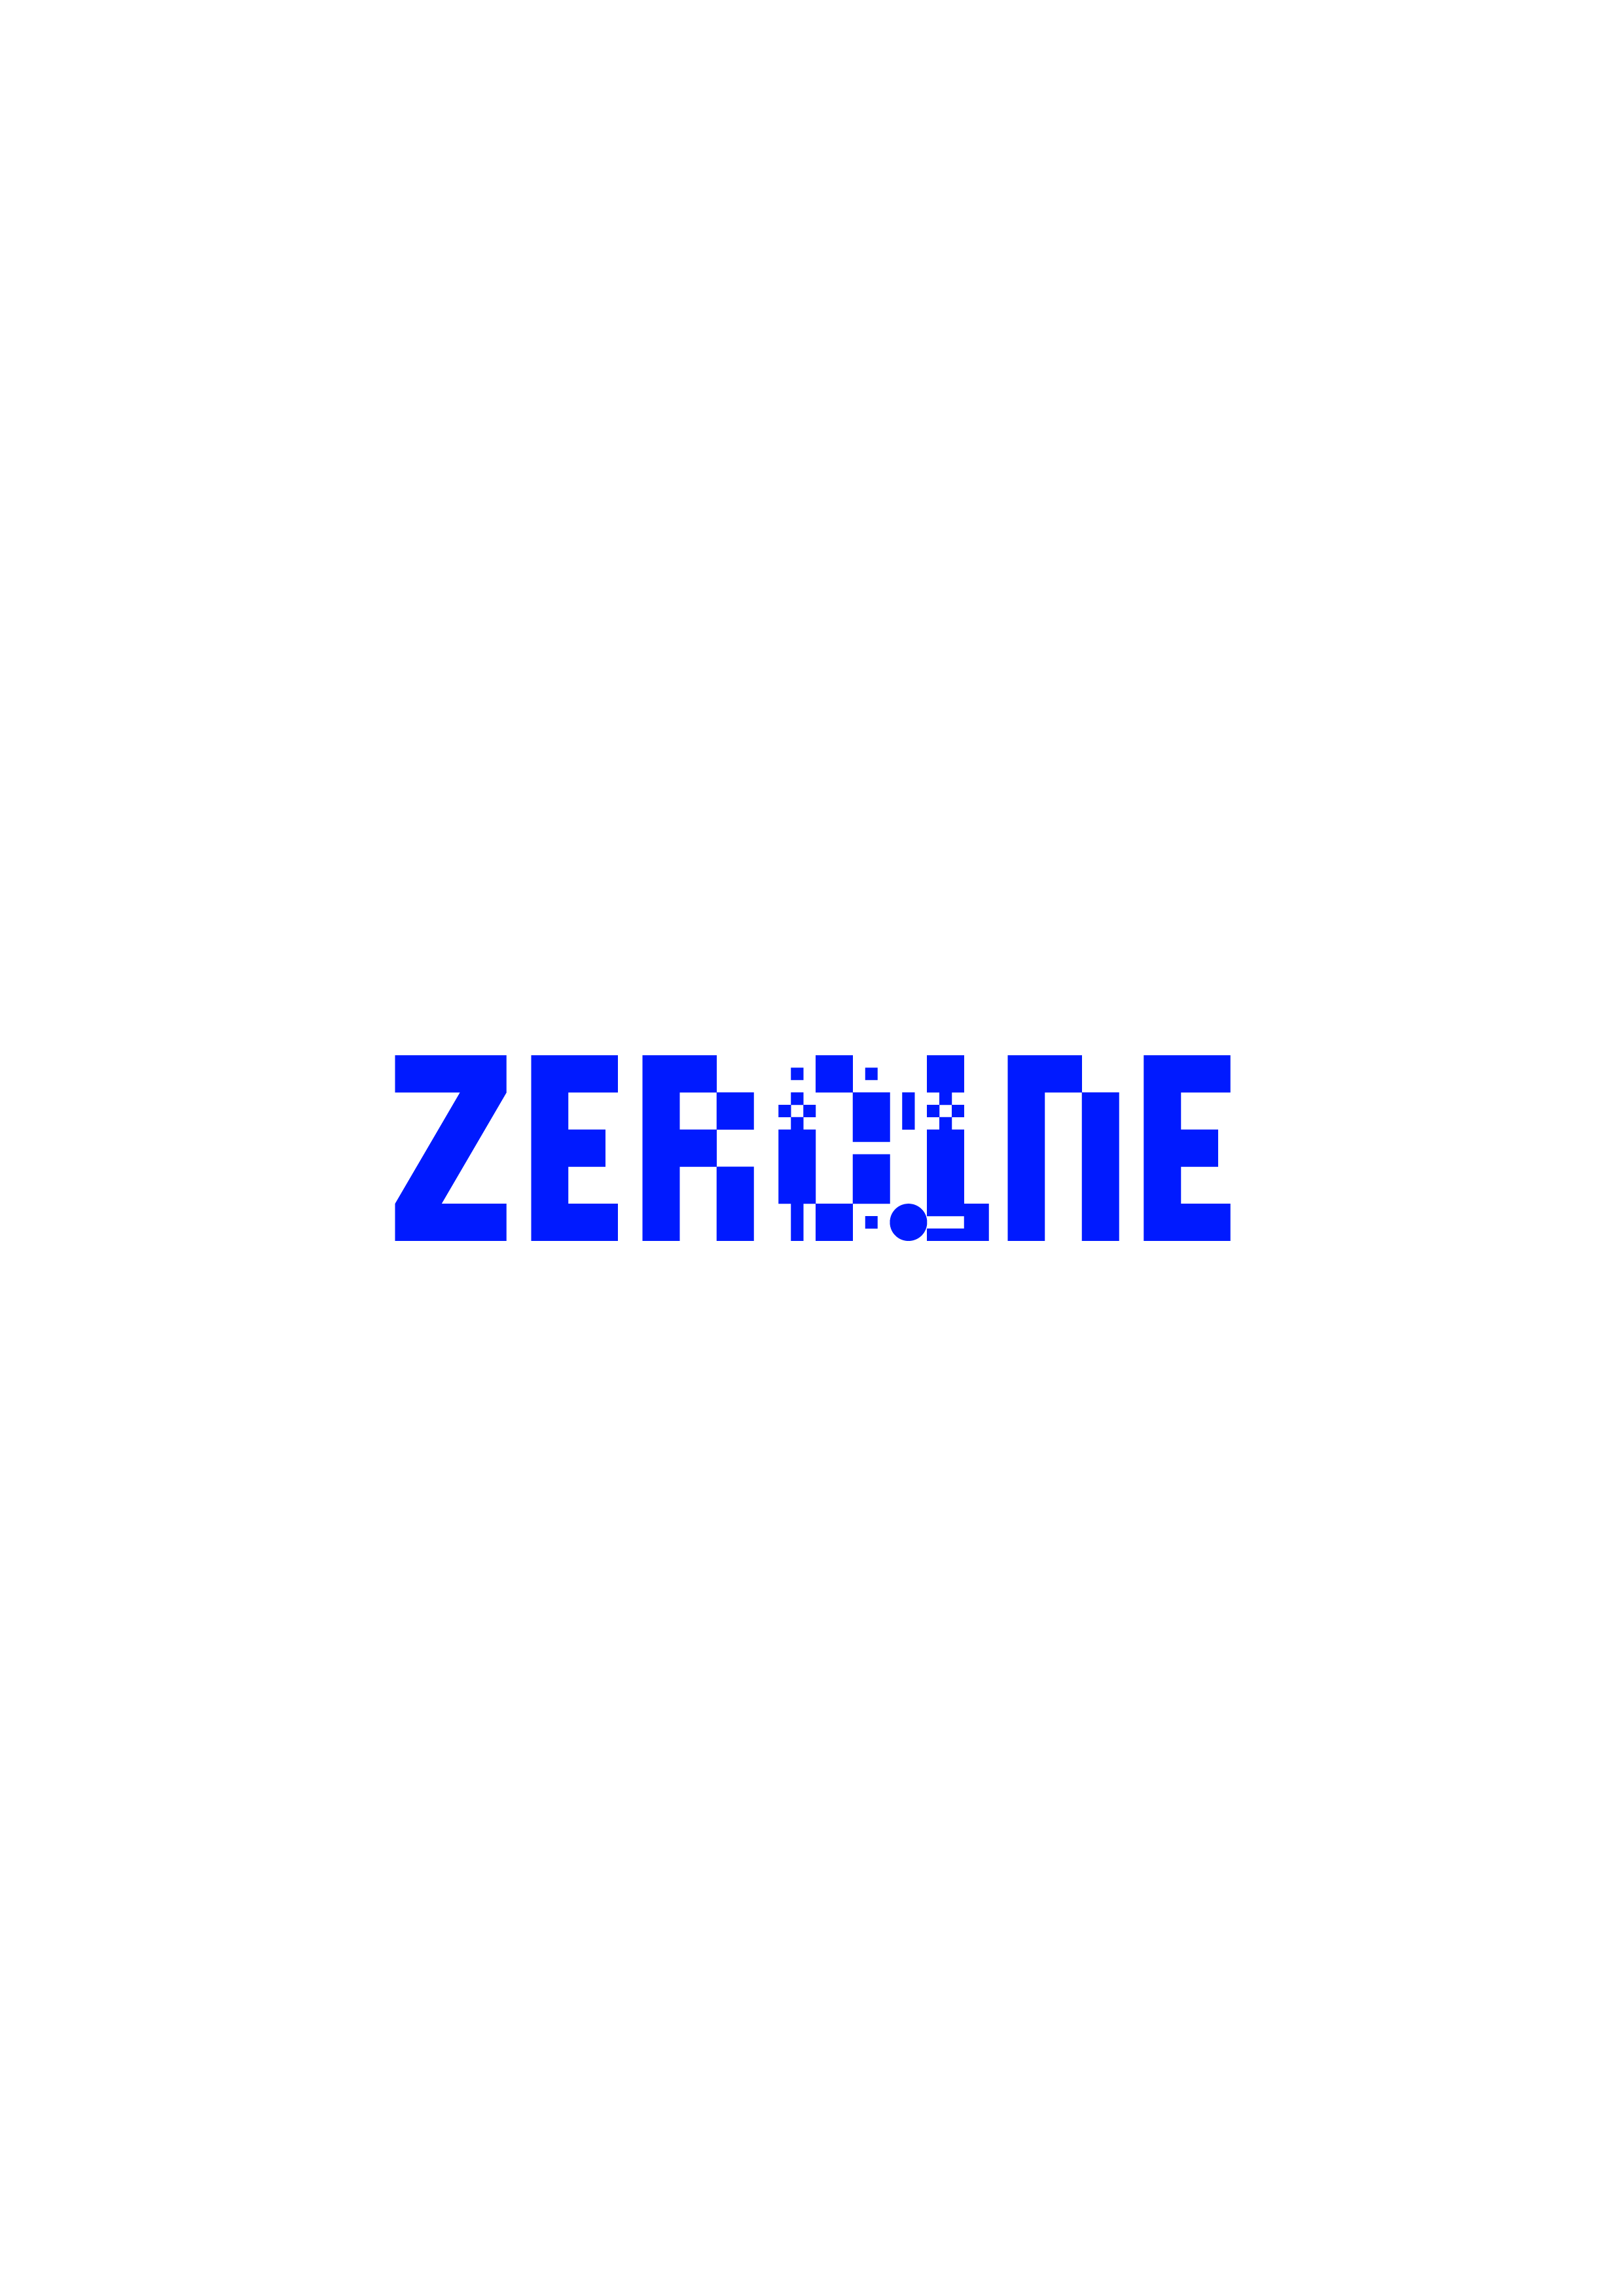 현대자동차그룹 제로원/ HMG ZER01NE Logo